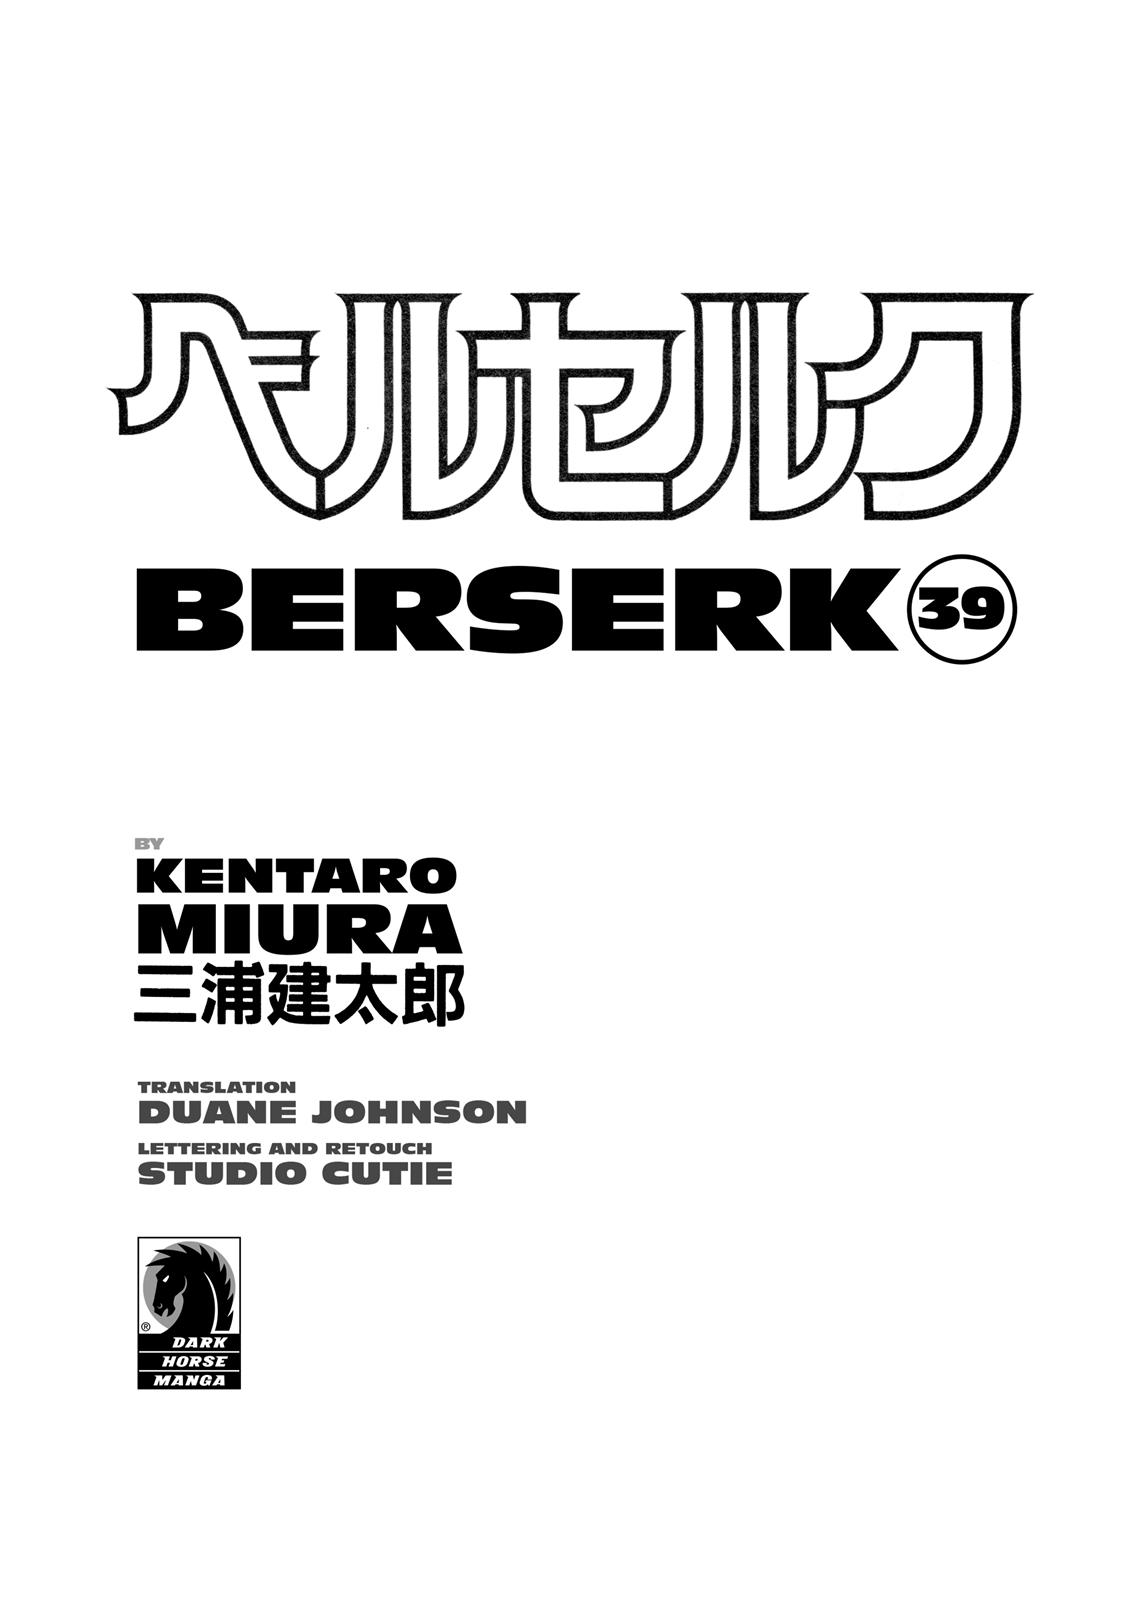 Berserk Manga Chapter 343 image 04